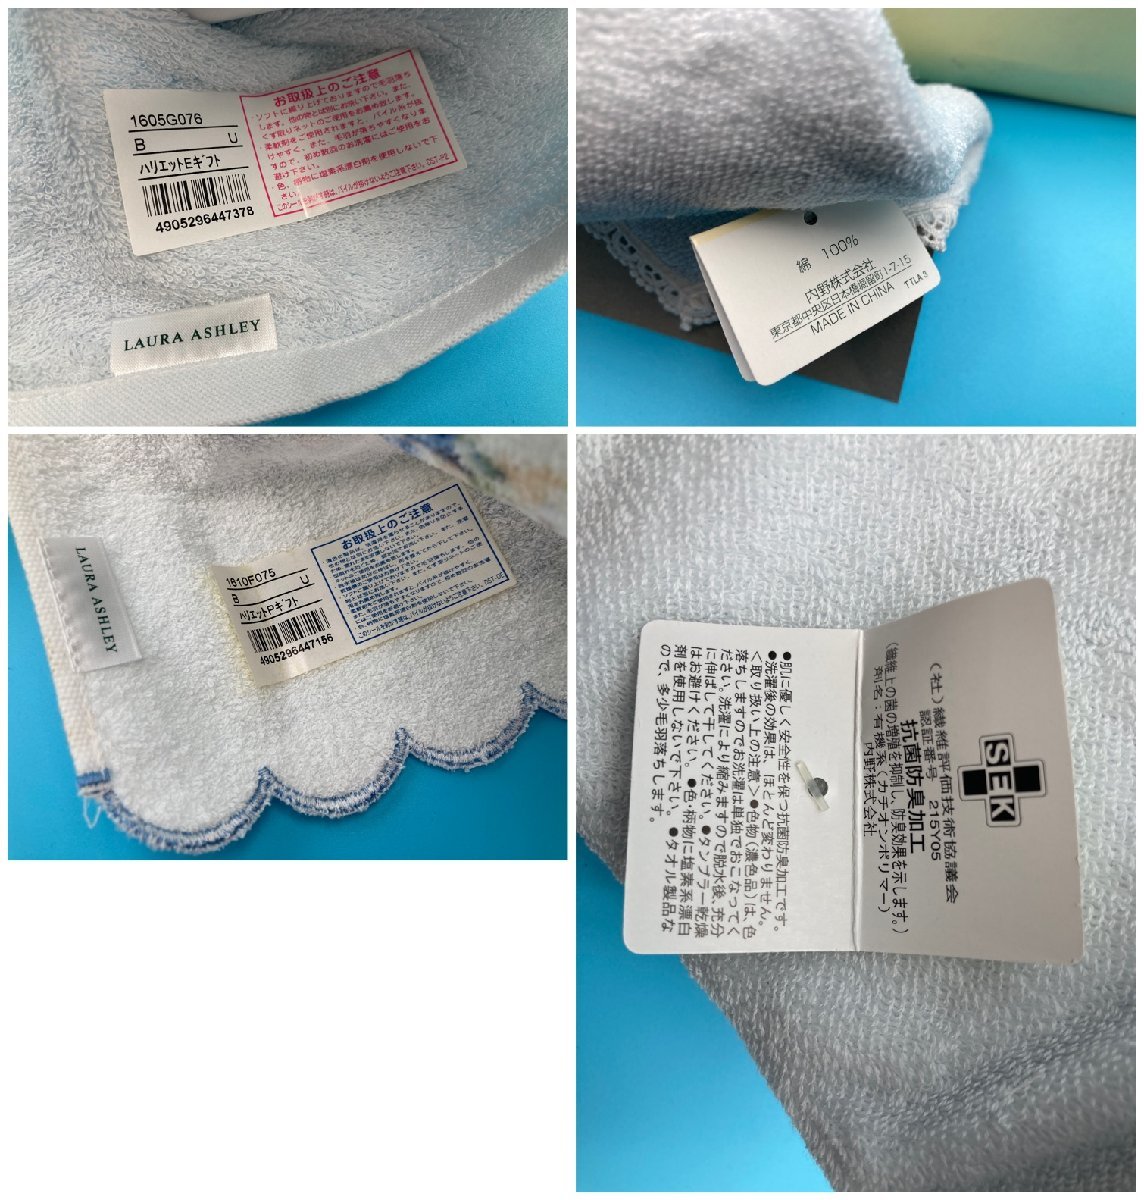 [A8578O168] Laura Ashley 4 листов носовой платок полотенце комплект подарок полотенце для лица полотенце для рук синий цветок бледно-голубой - lietoLAURA ASHLEY прекрасный товар 